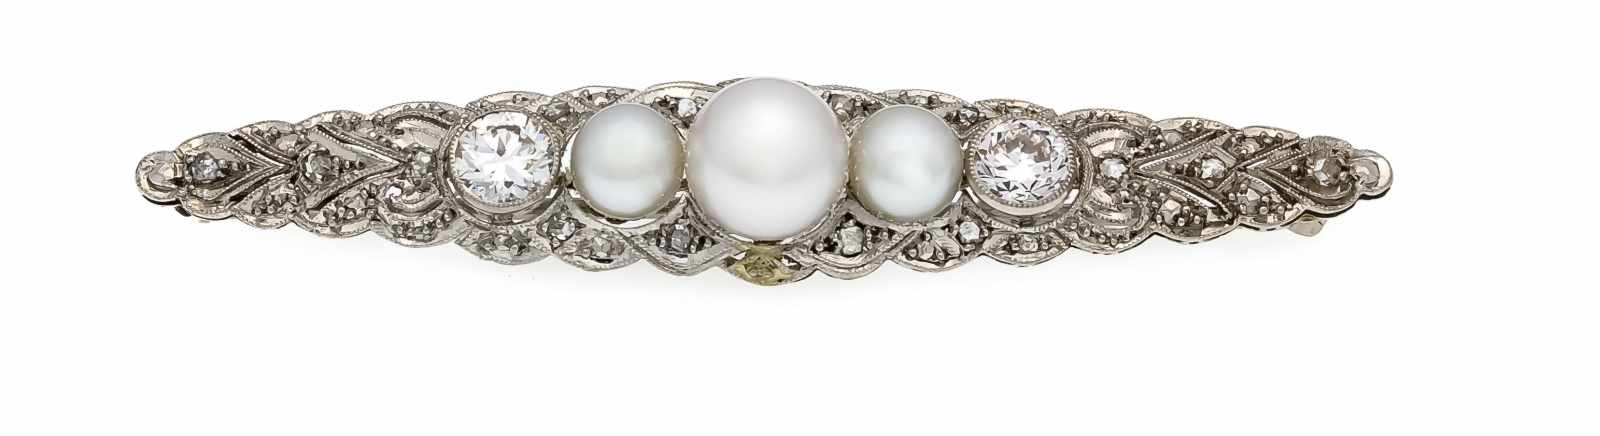 Art Deco Altschliff-Diamant-Perlen-Brosche WG 585/000 mit 2 Altschliff-Diamanten, zus.0,90 ct TW-W/